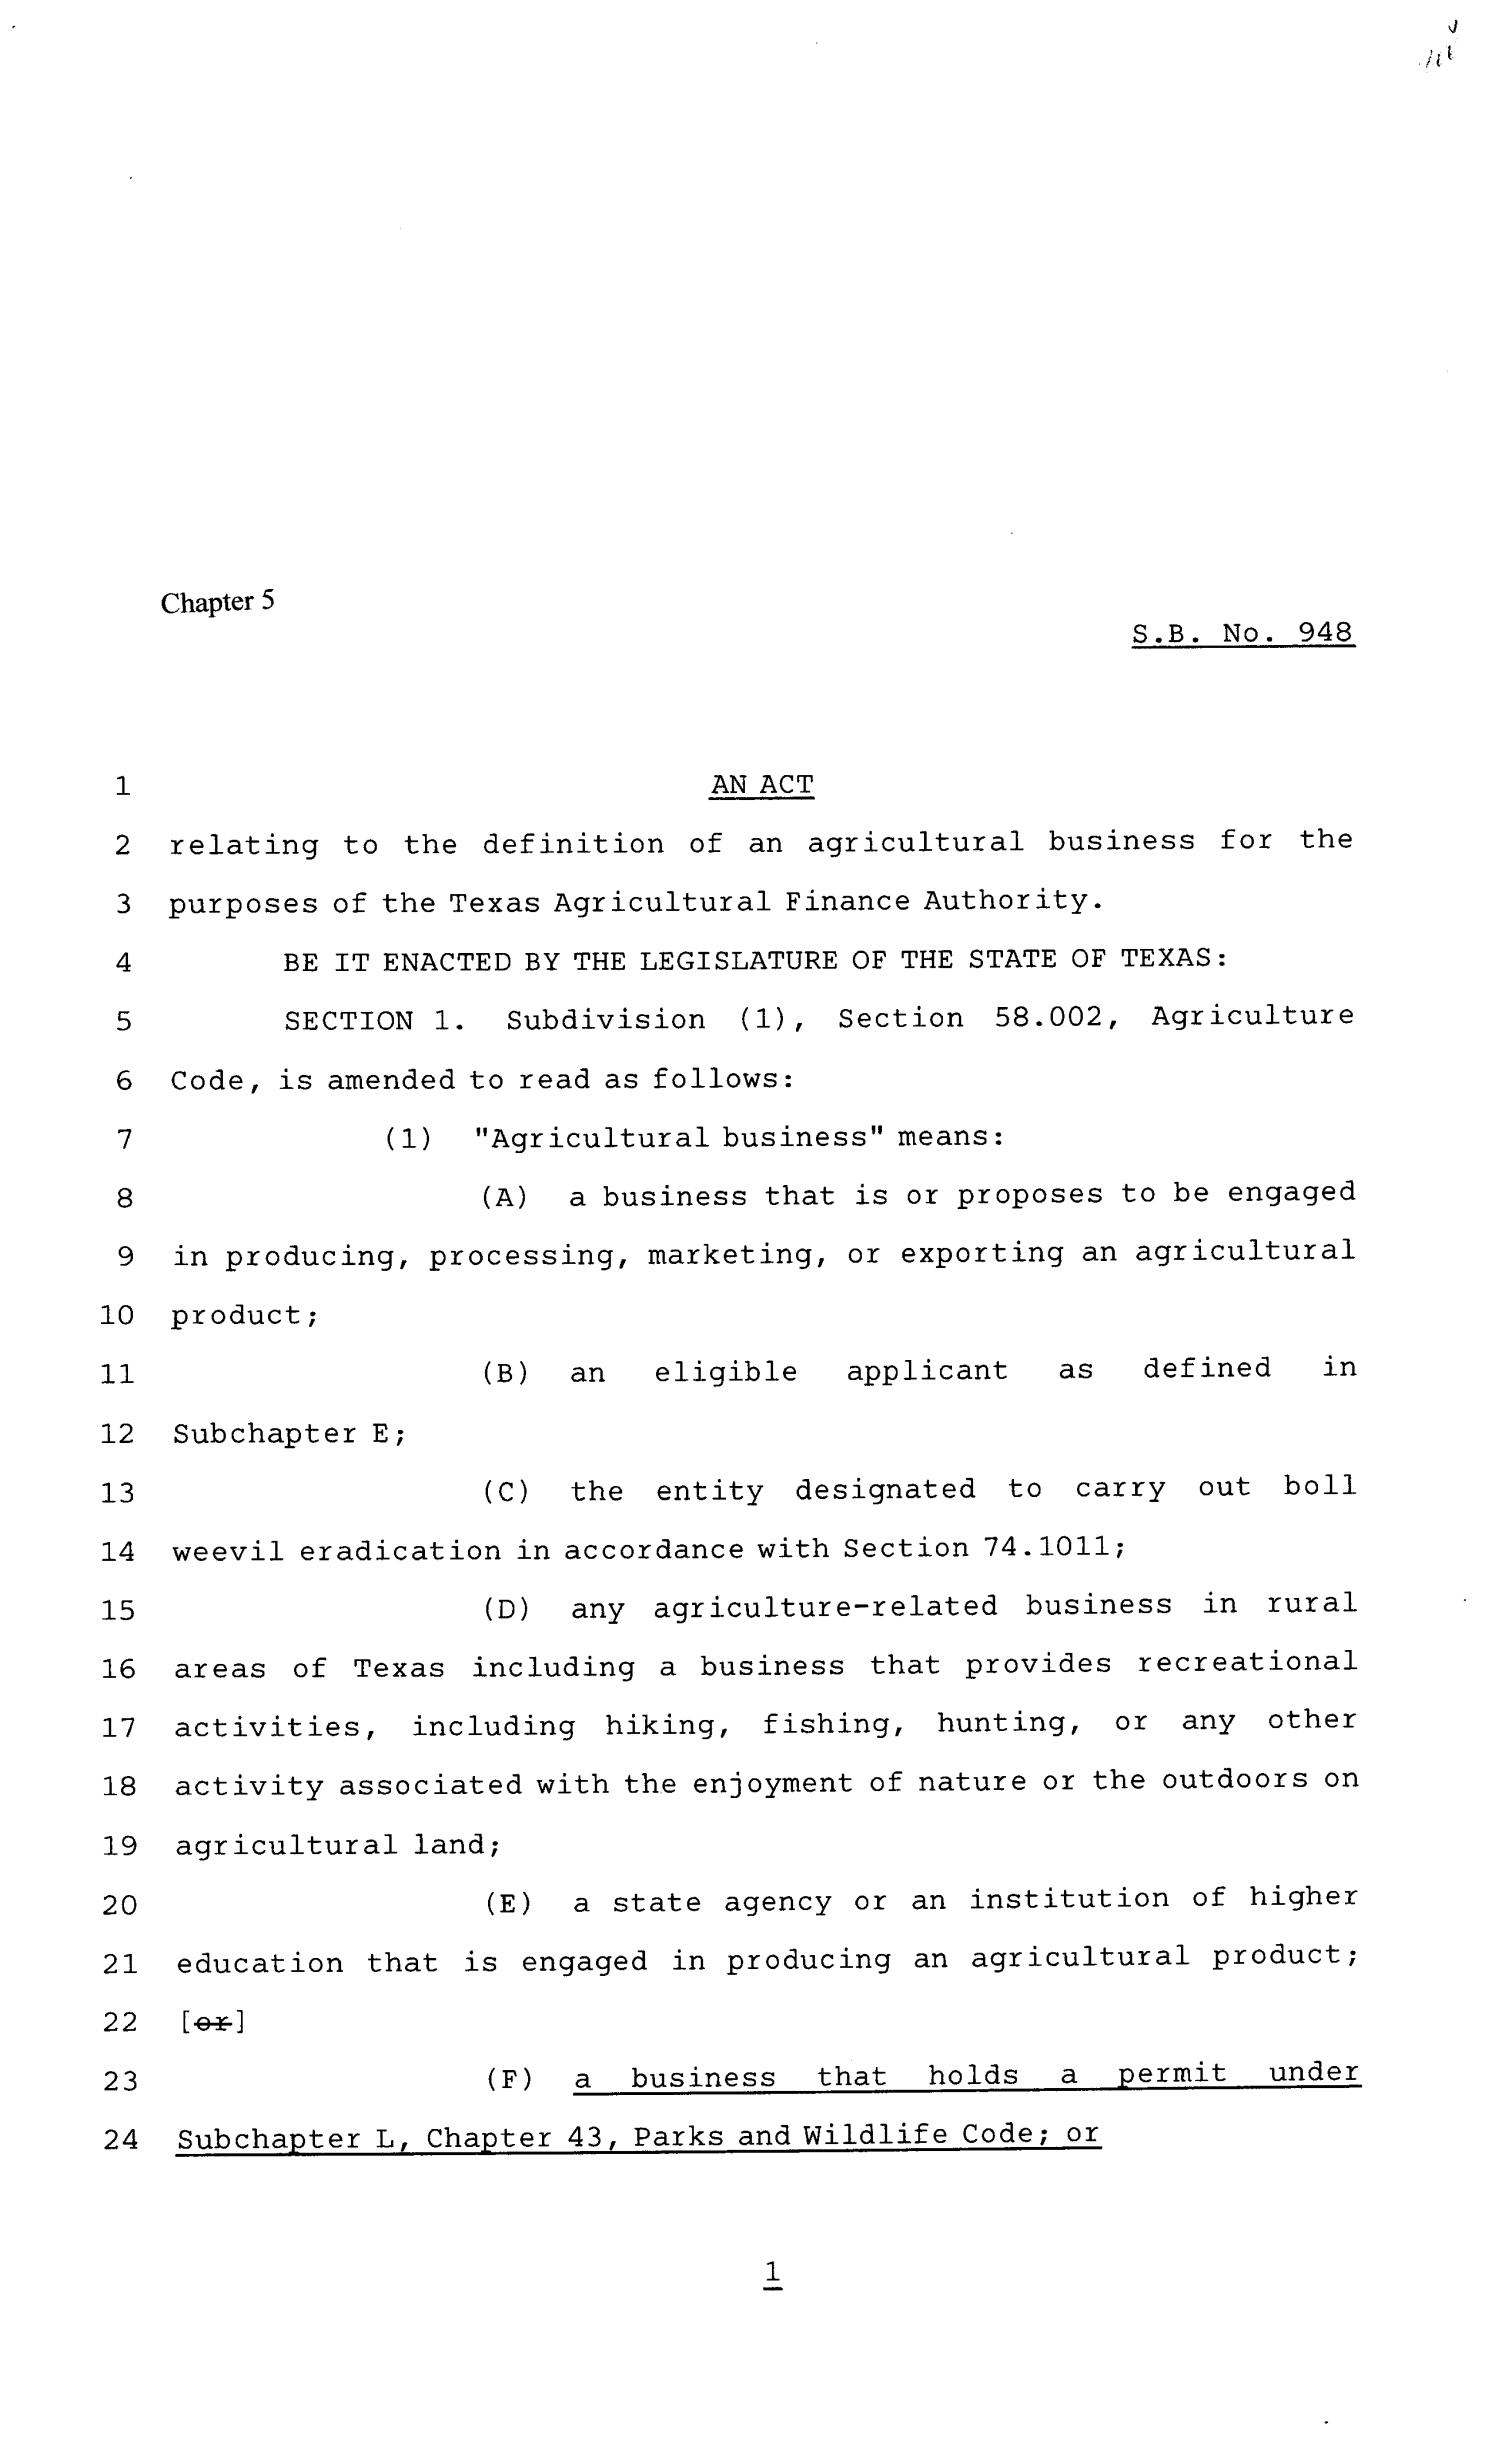 81st Texas Legislature, Senate Bill 948, Chapter 5
                                                
                                                    [Sequence #]: 1 of 2
                                                